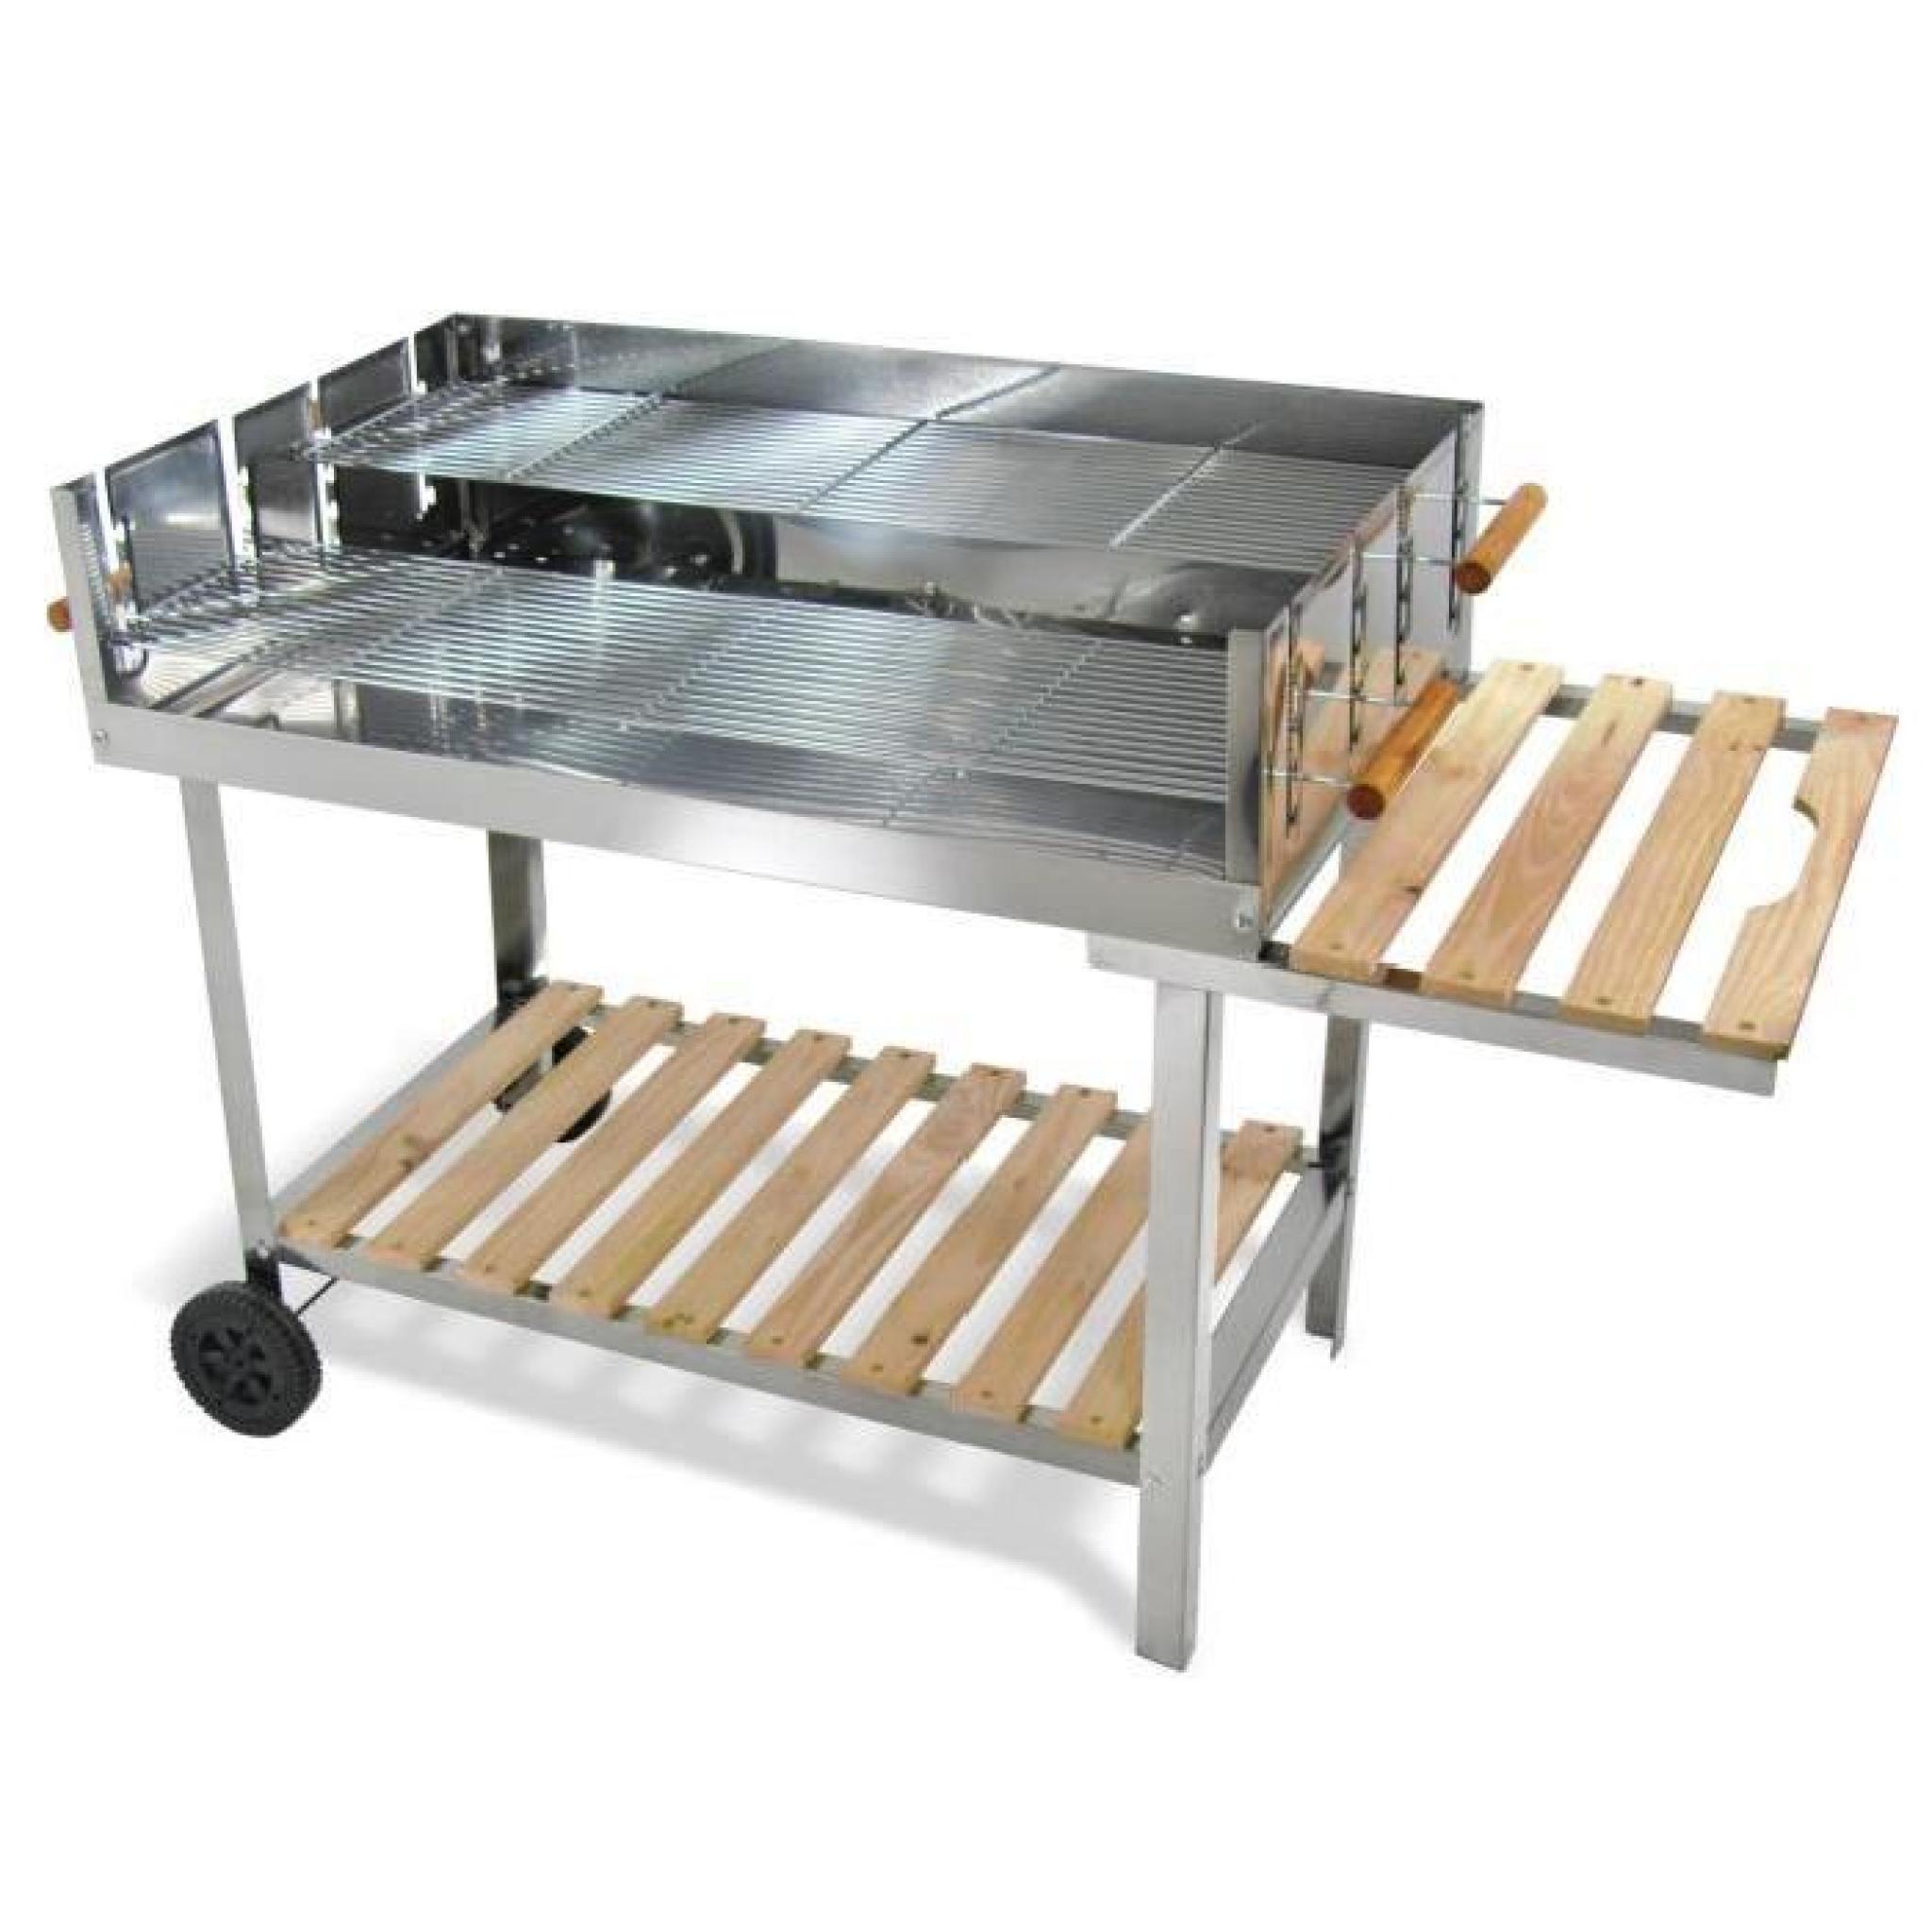 Table de Barbecue (feux de bois), Matiere: Inox, Dimension: 136cm x 60cm x 93cm, Surface du Grill: 100cm x 60 cm, plage pas cher